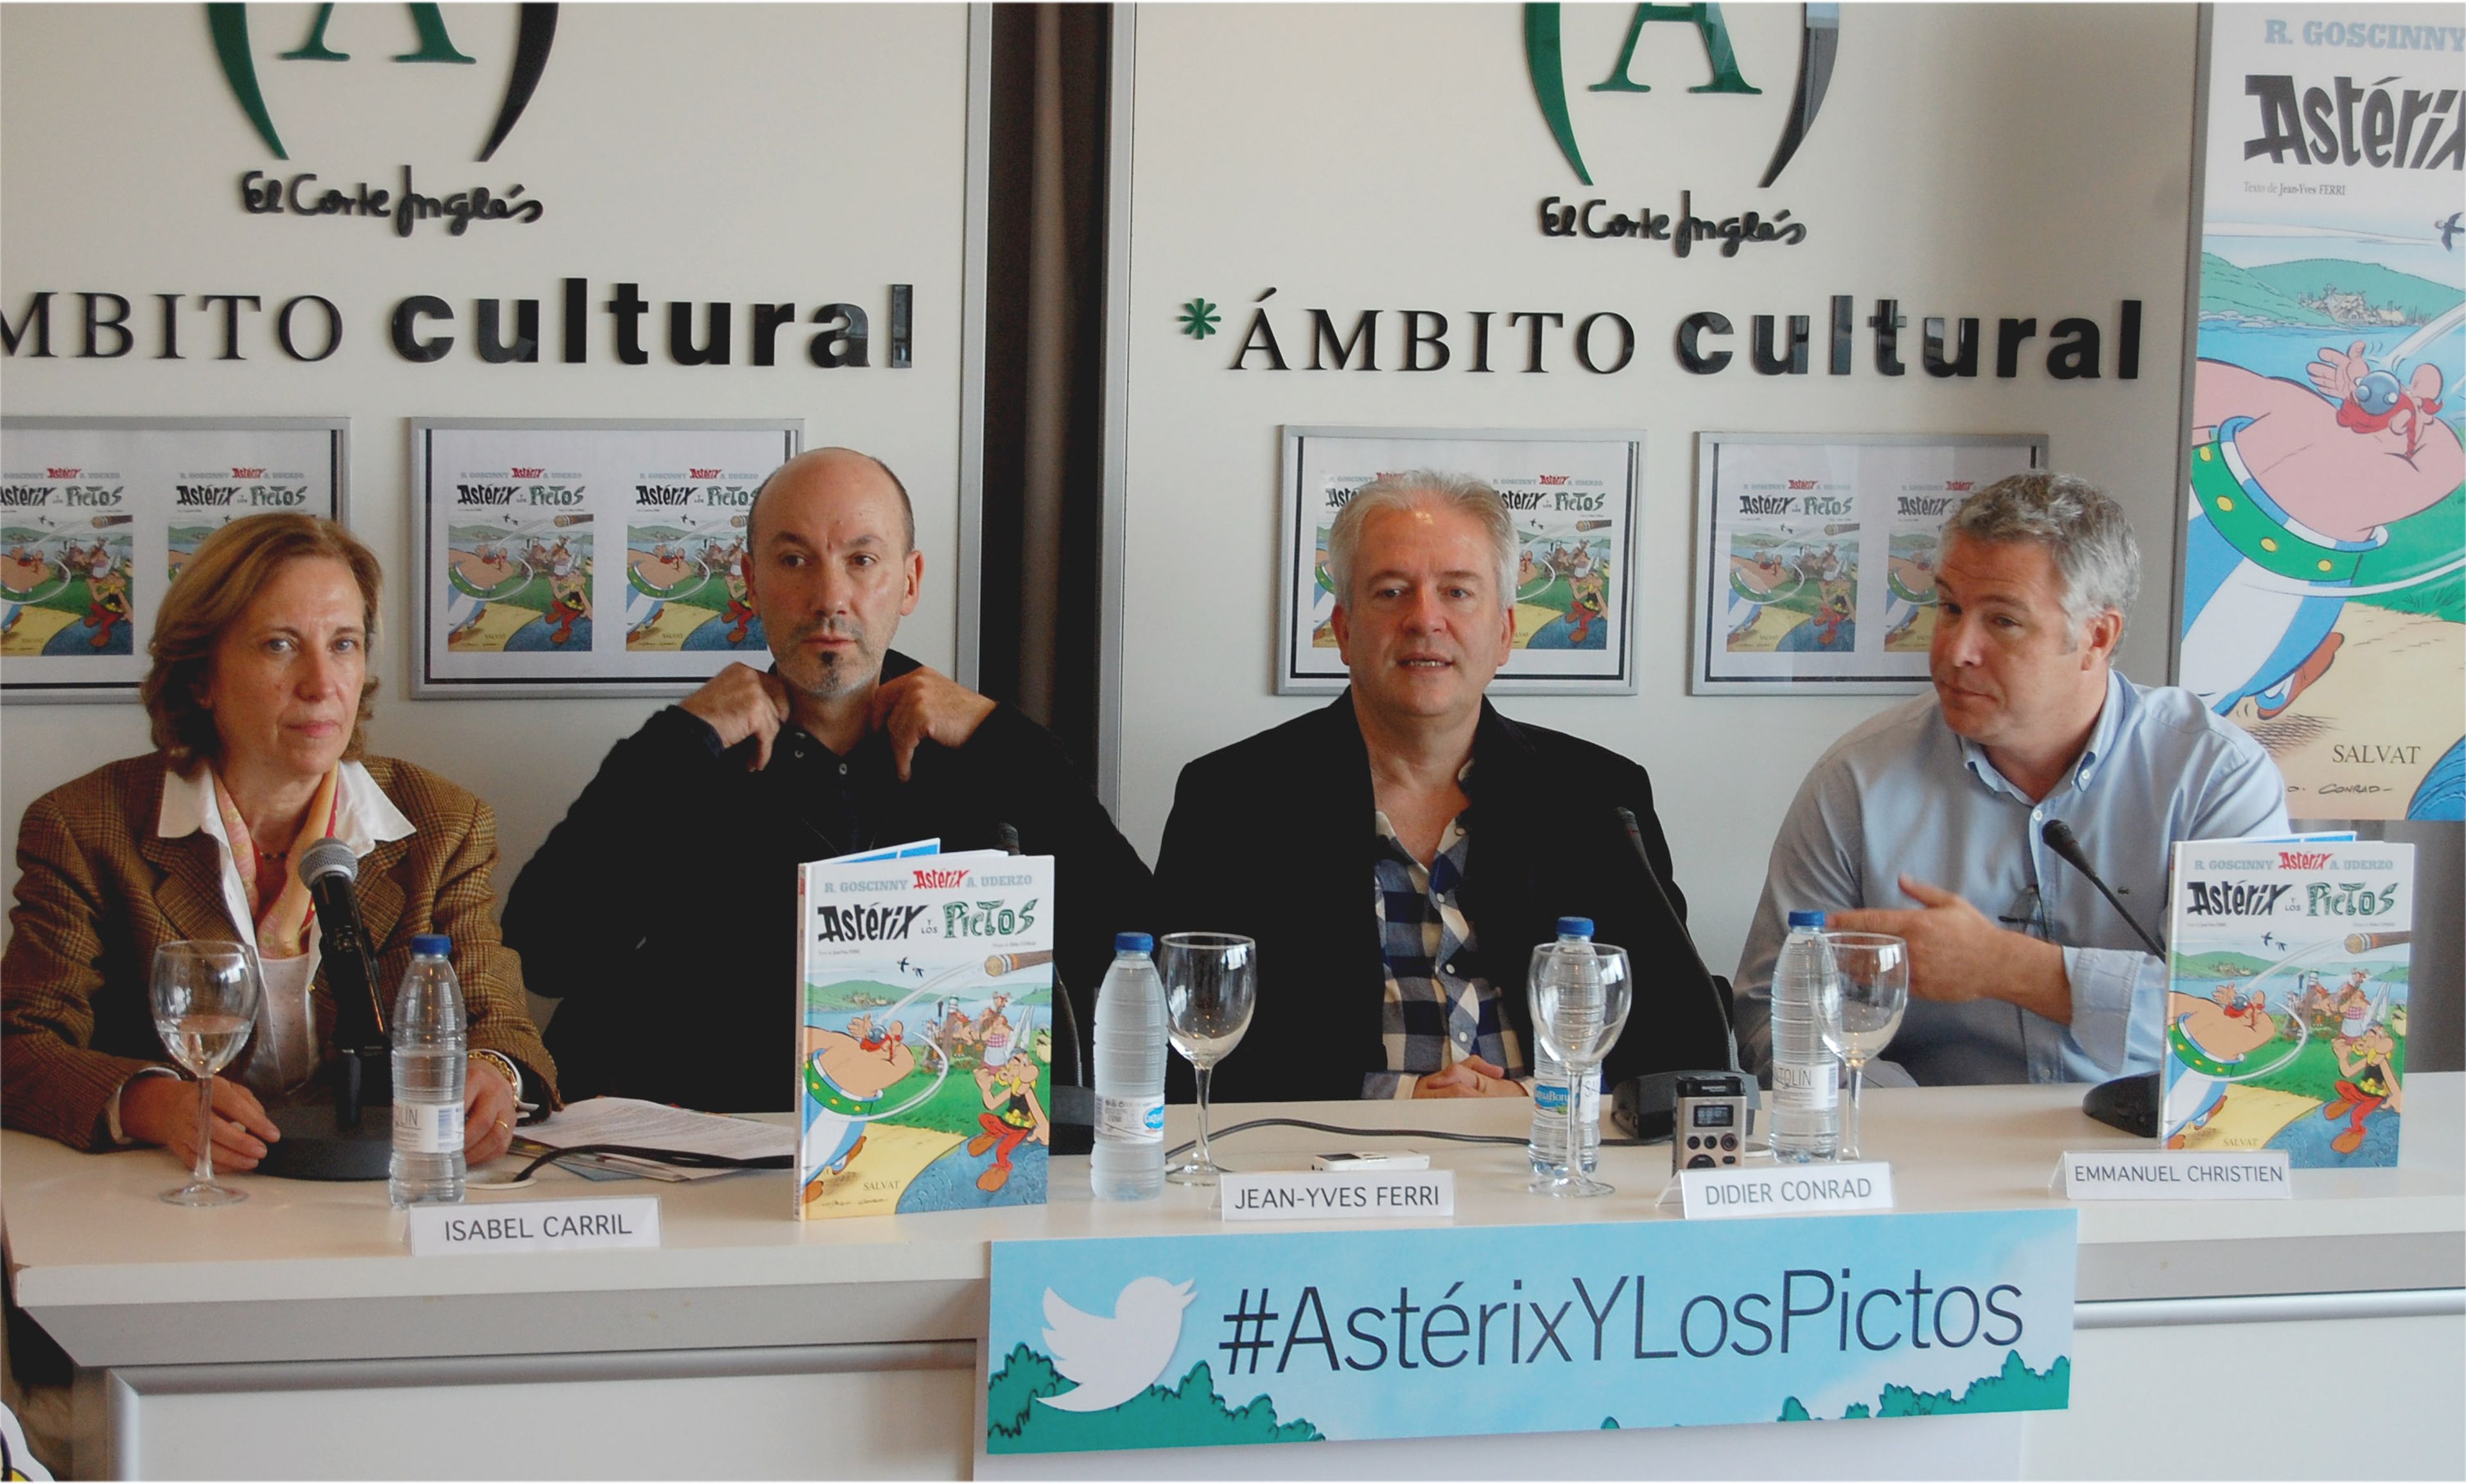 Presentación en Madrid de Asterix y los Pictos